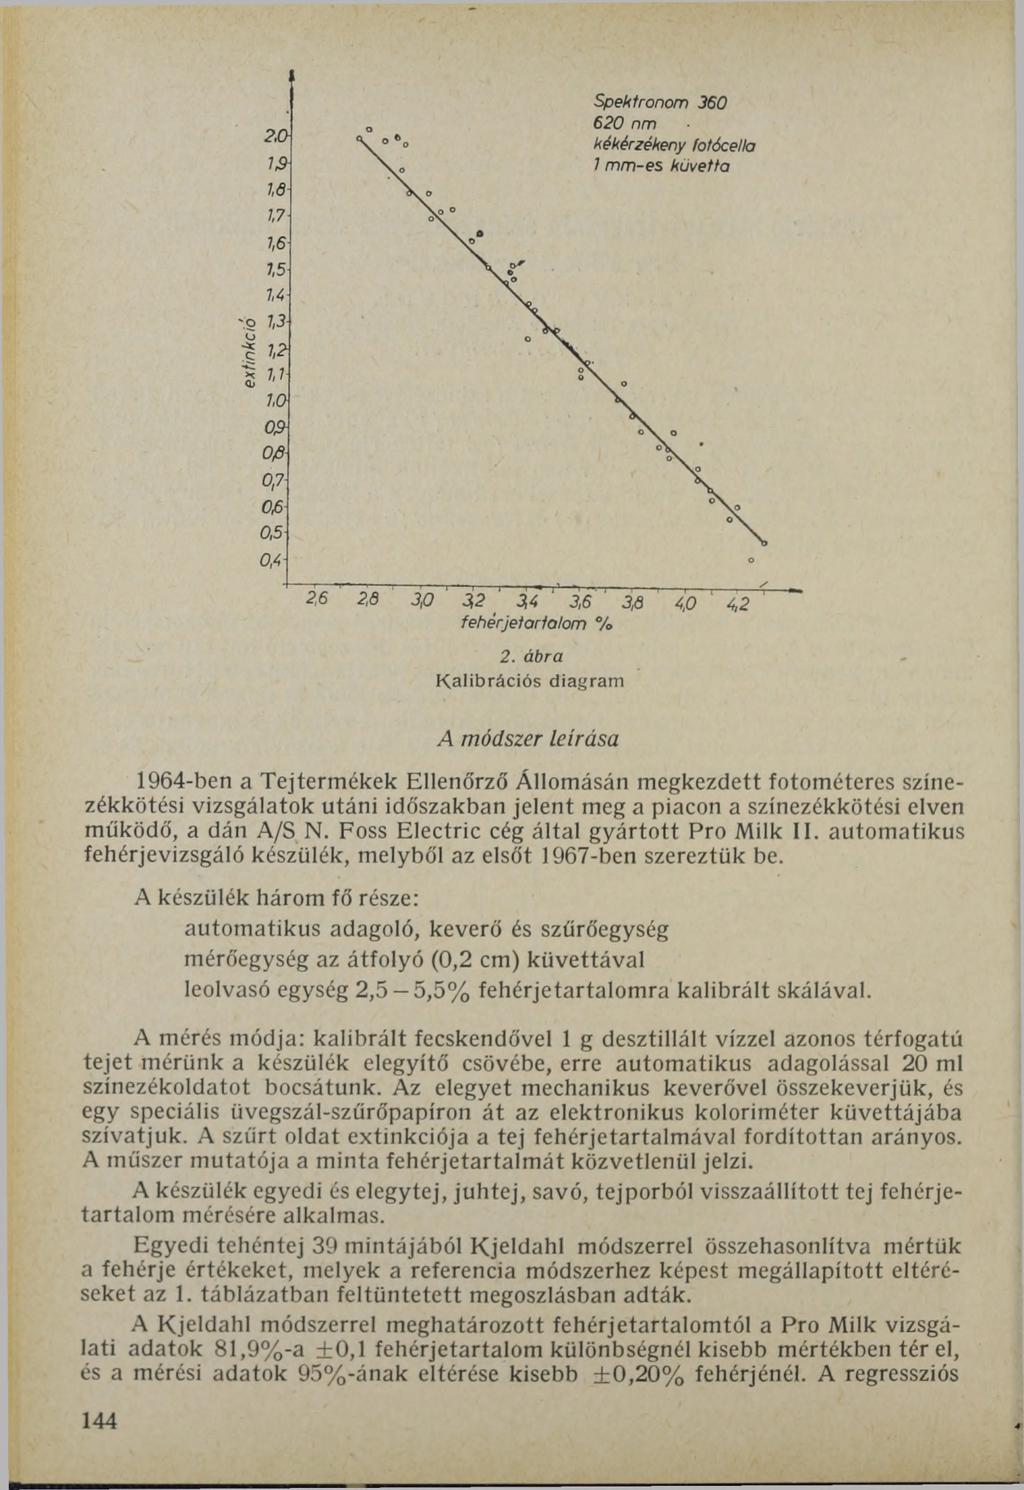 Spektronom 360 620 пт kékérzékeny fotócella 1 m m -es küvetta A módszer leírása 1964-ben a Tejtermékek Ellenőrző Állomásán megkezdett fotométeres színezékkötési vizsgálatok utáni időszakban jelent